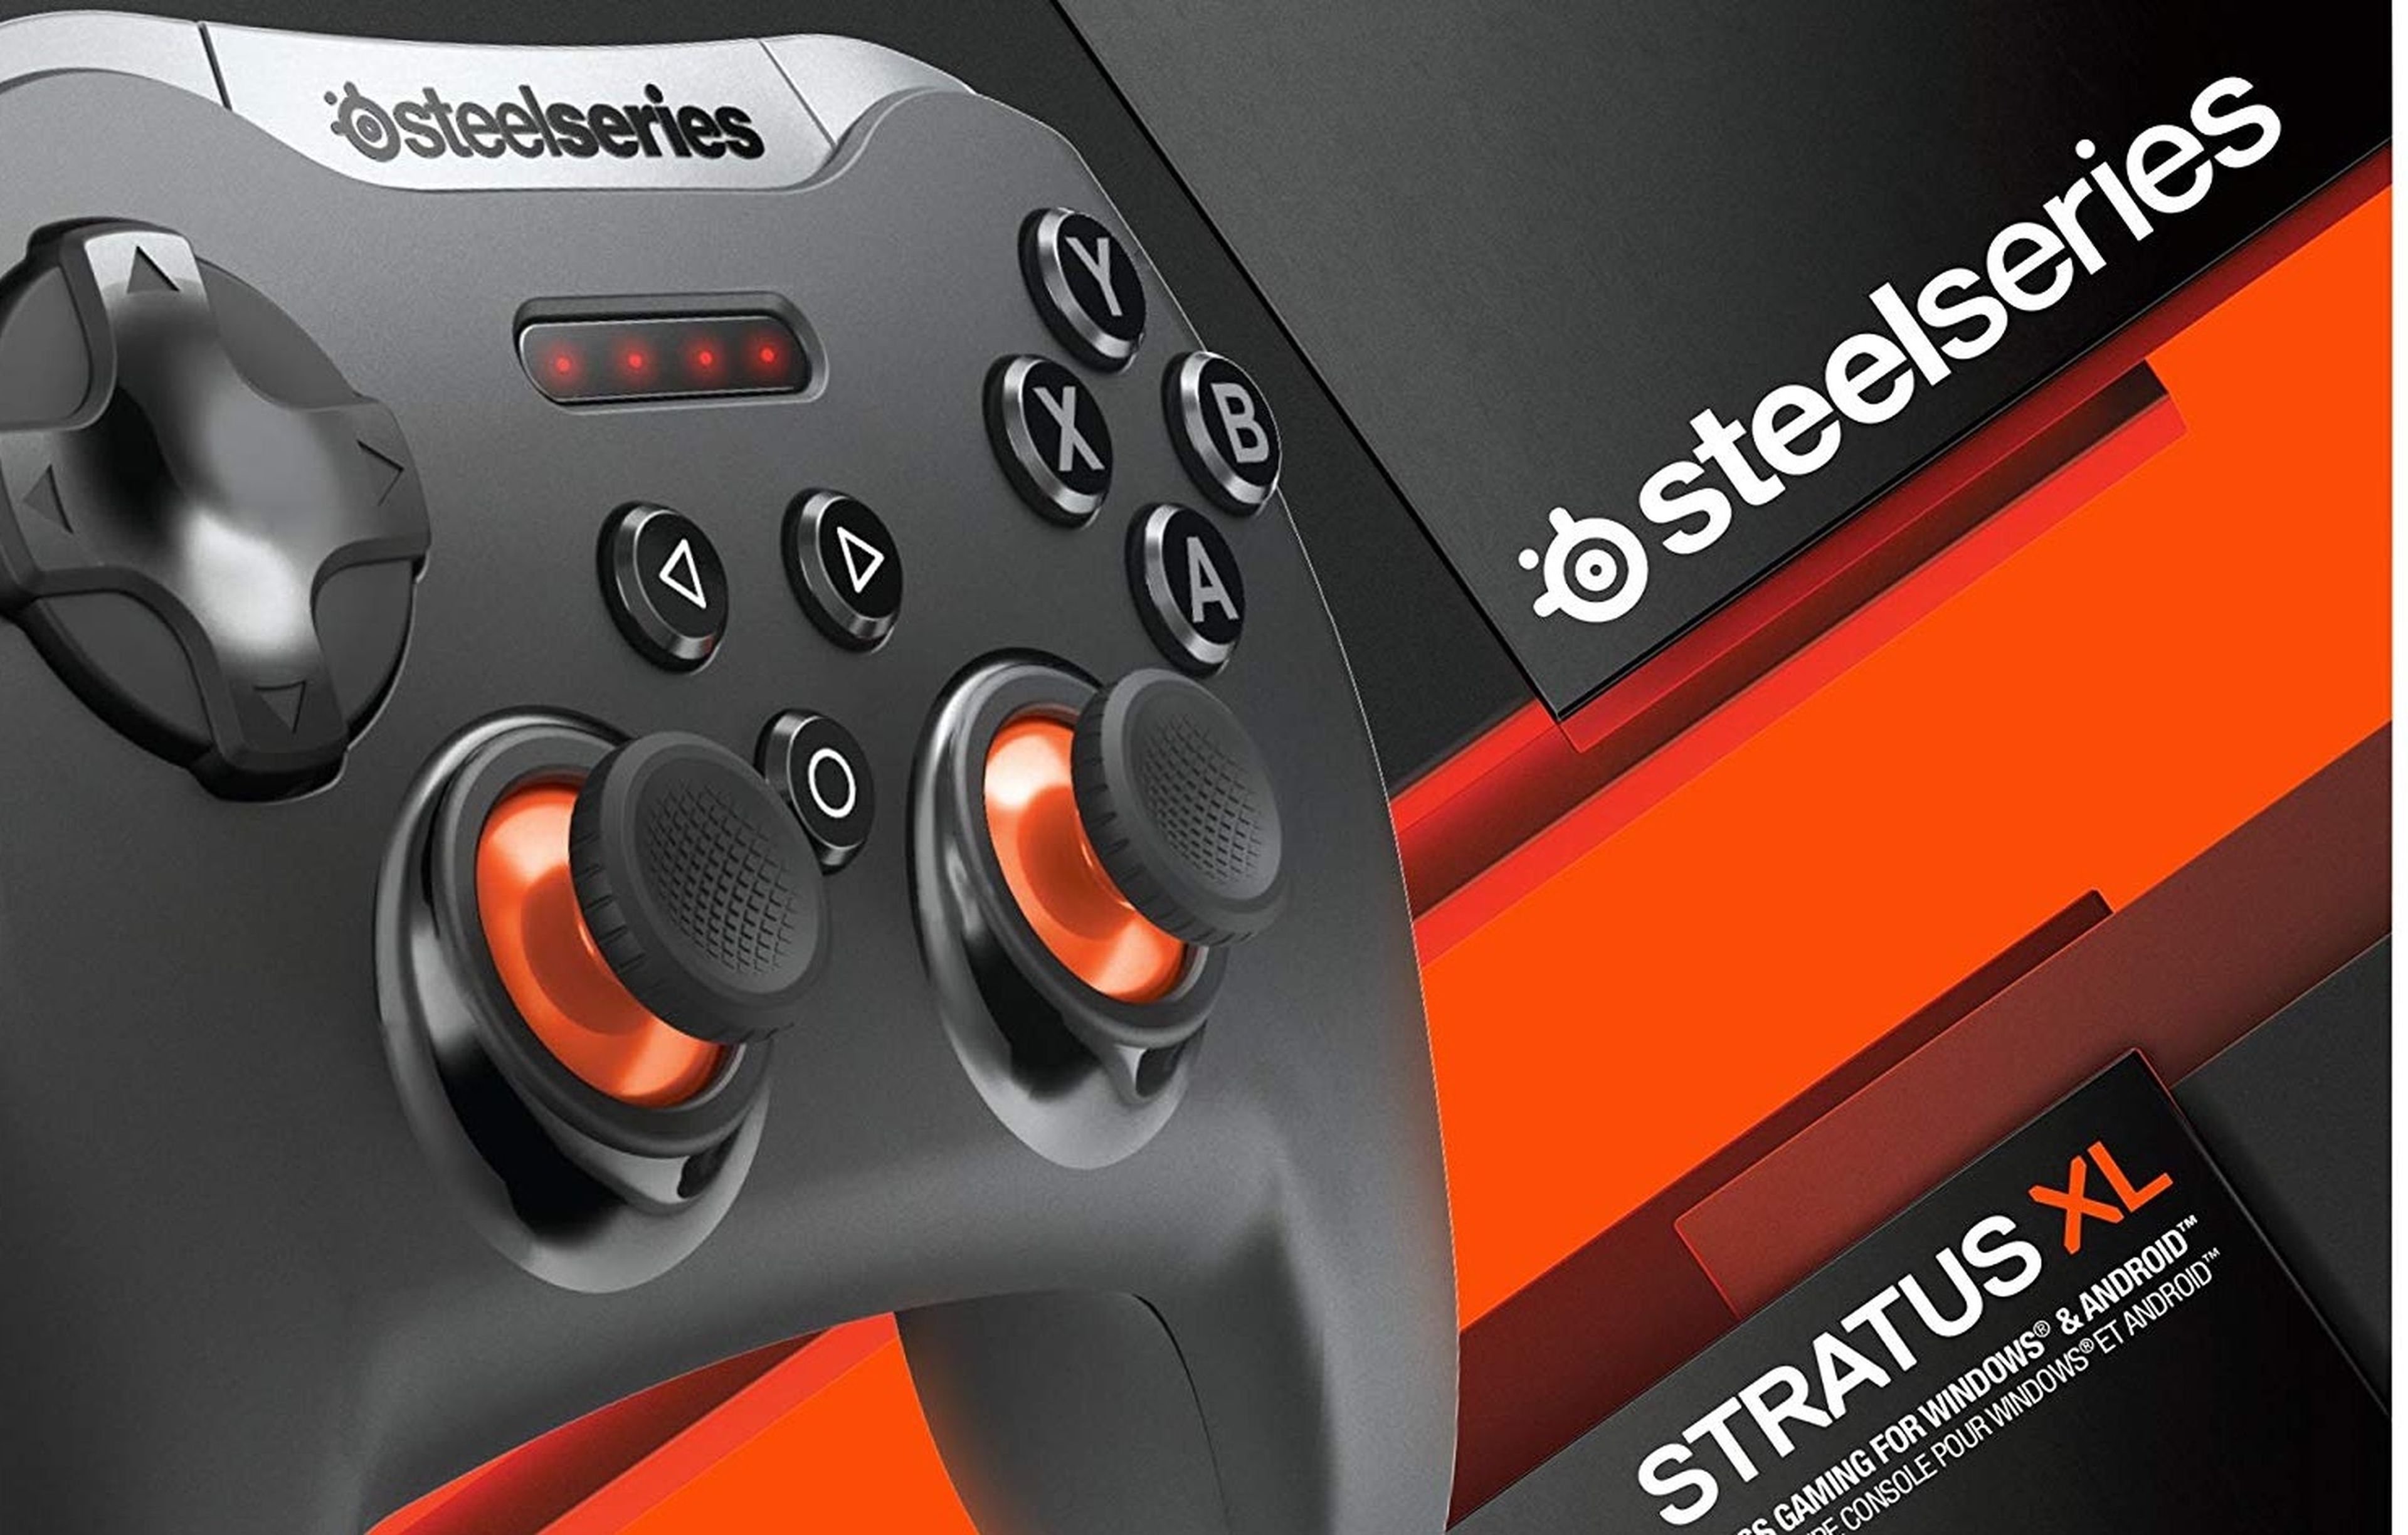 SteelSeries Stratus XL